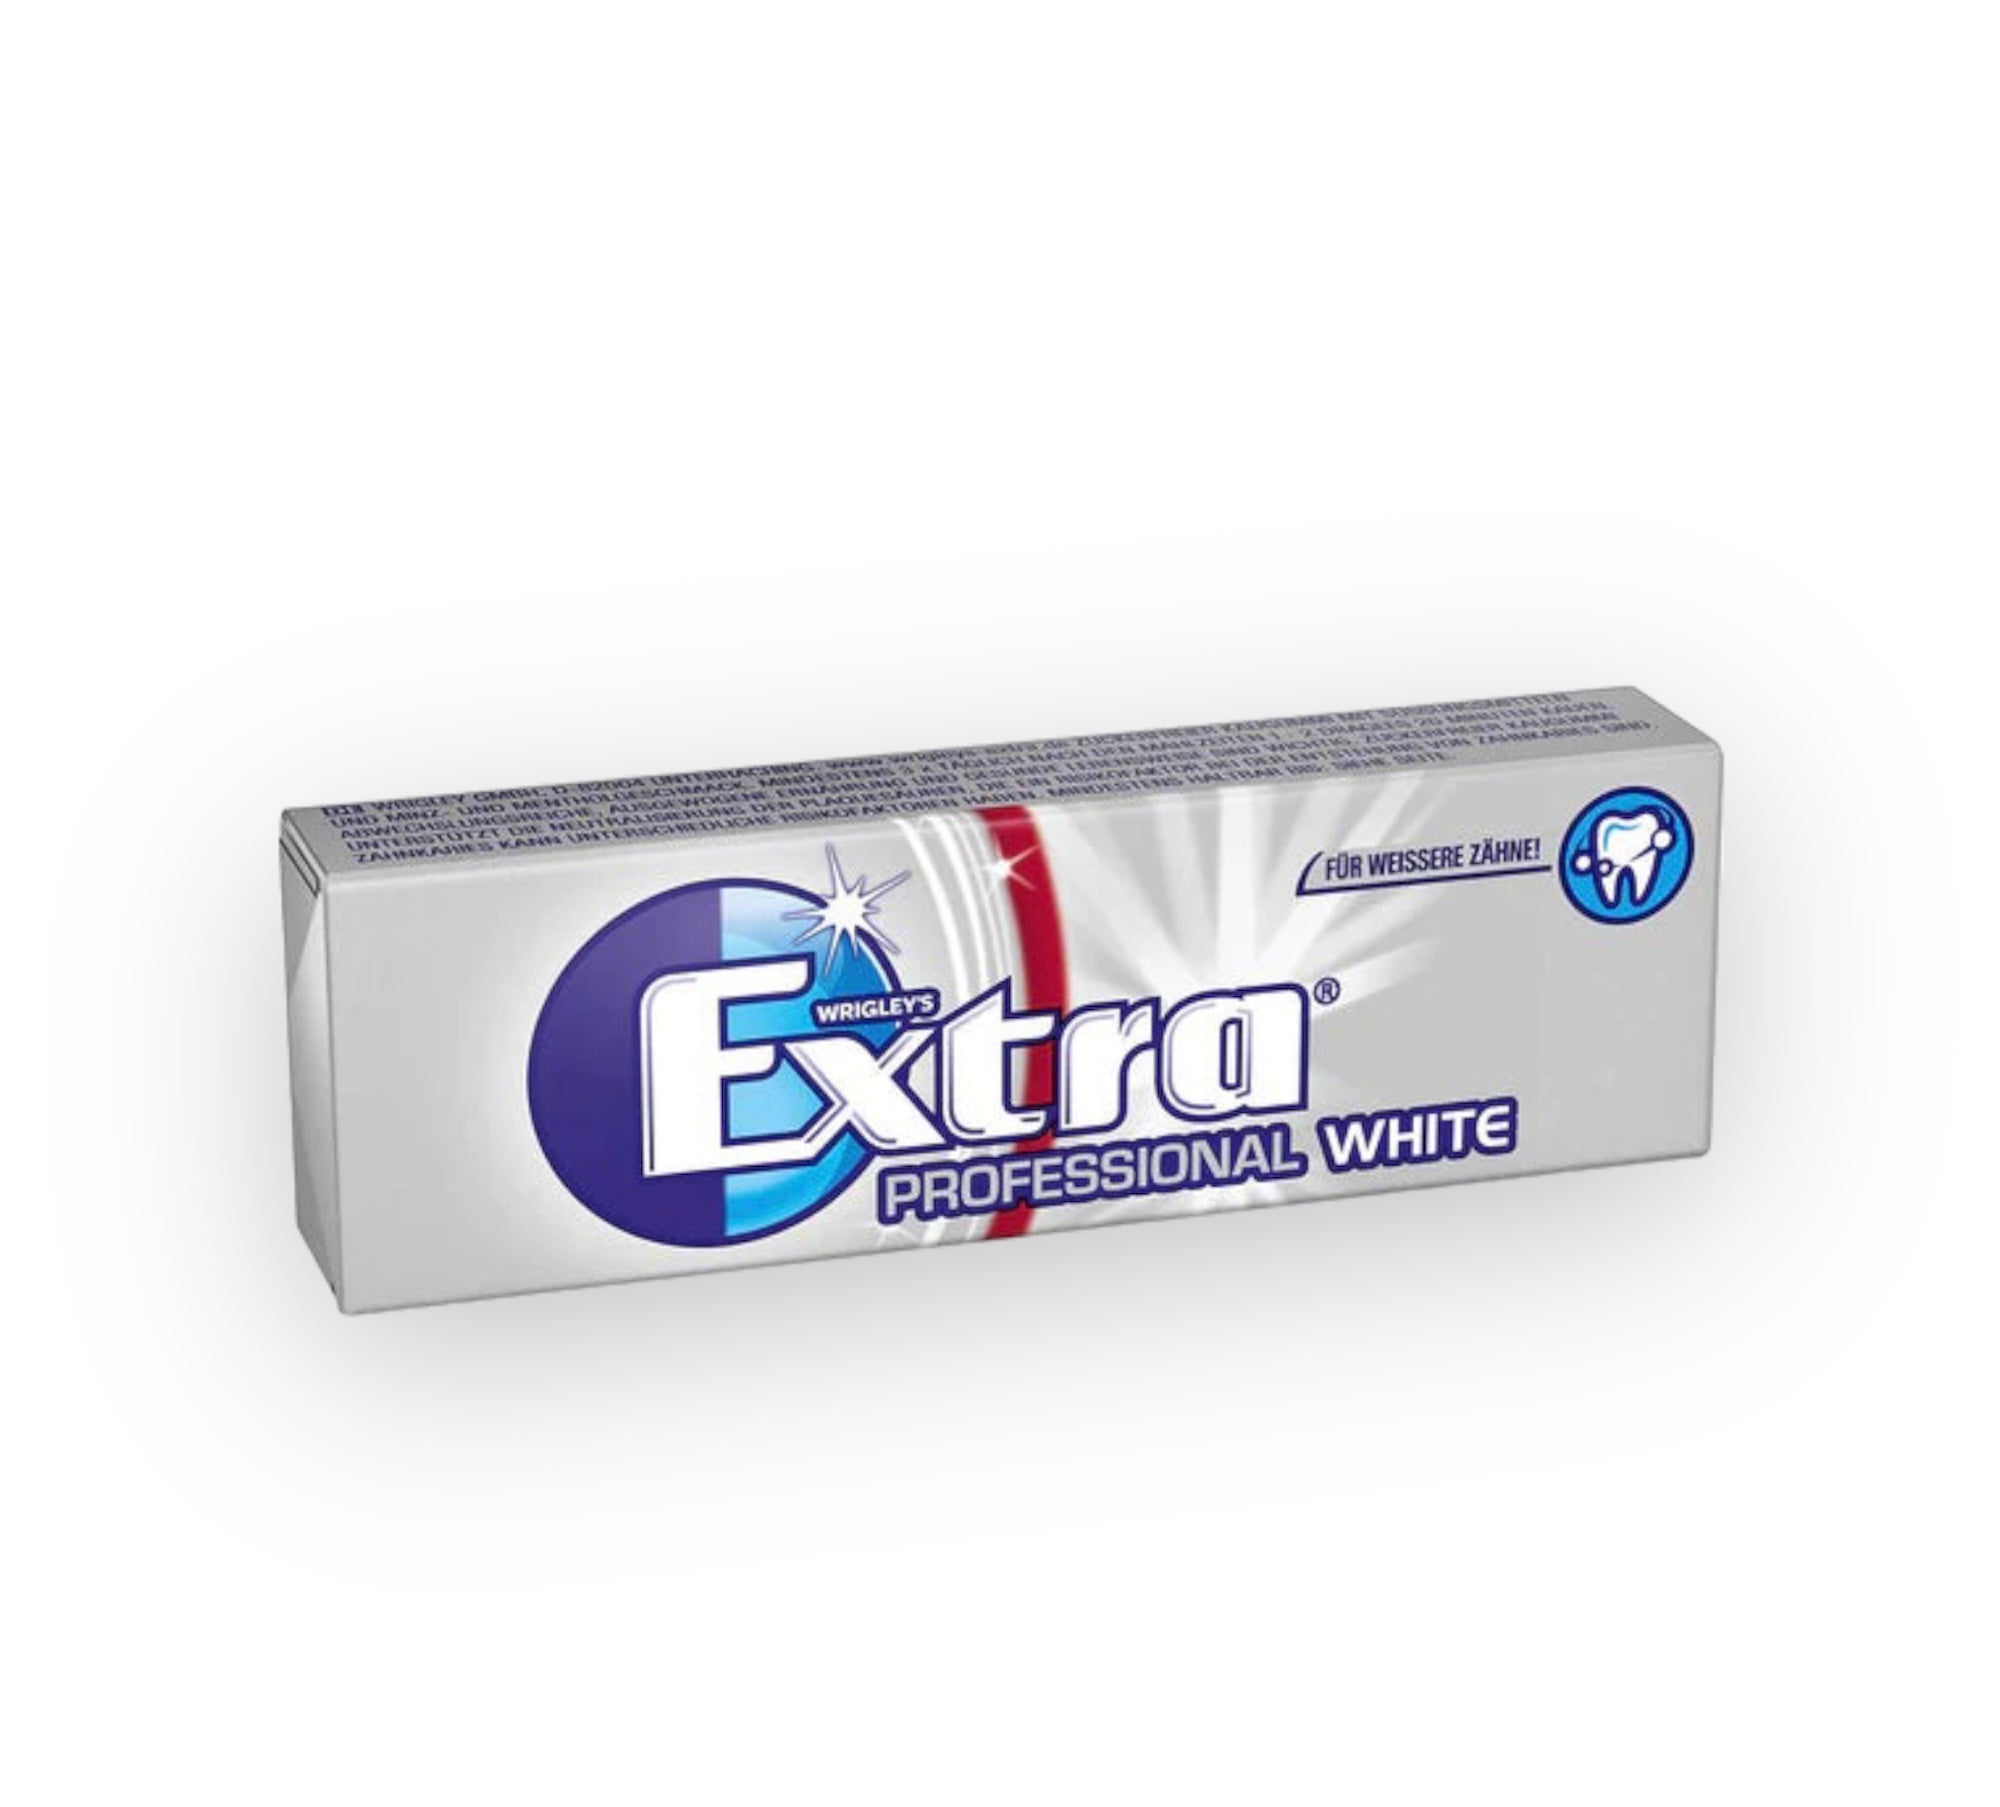 EXTRA Professional Kaugummi white, weiße Zähne, 10 St